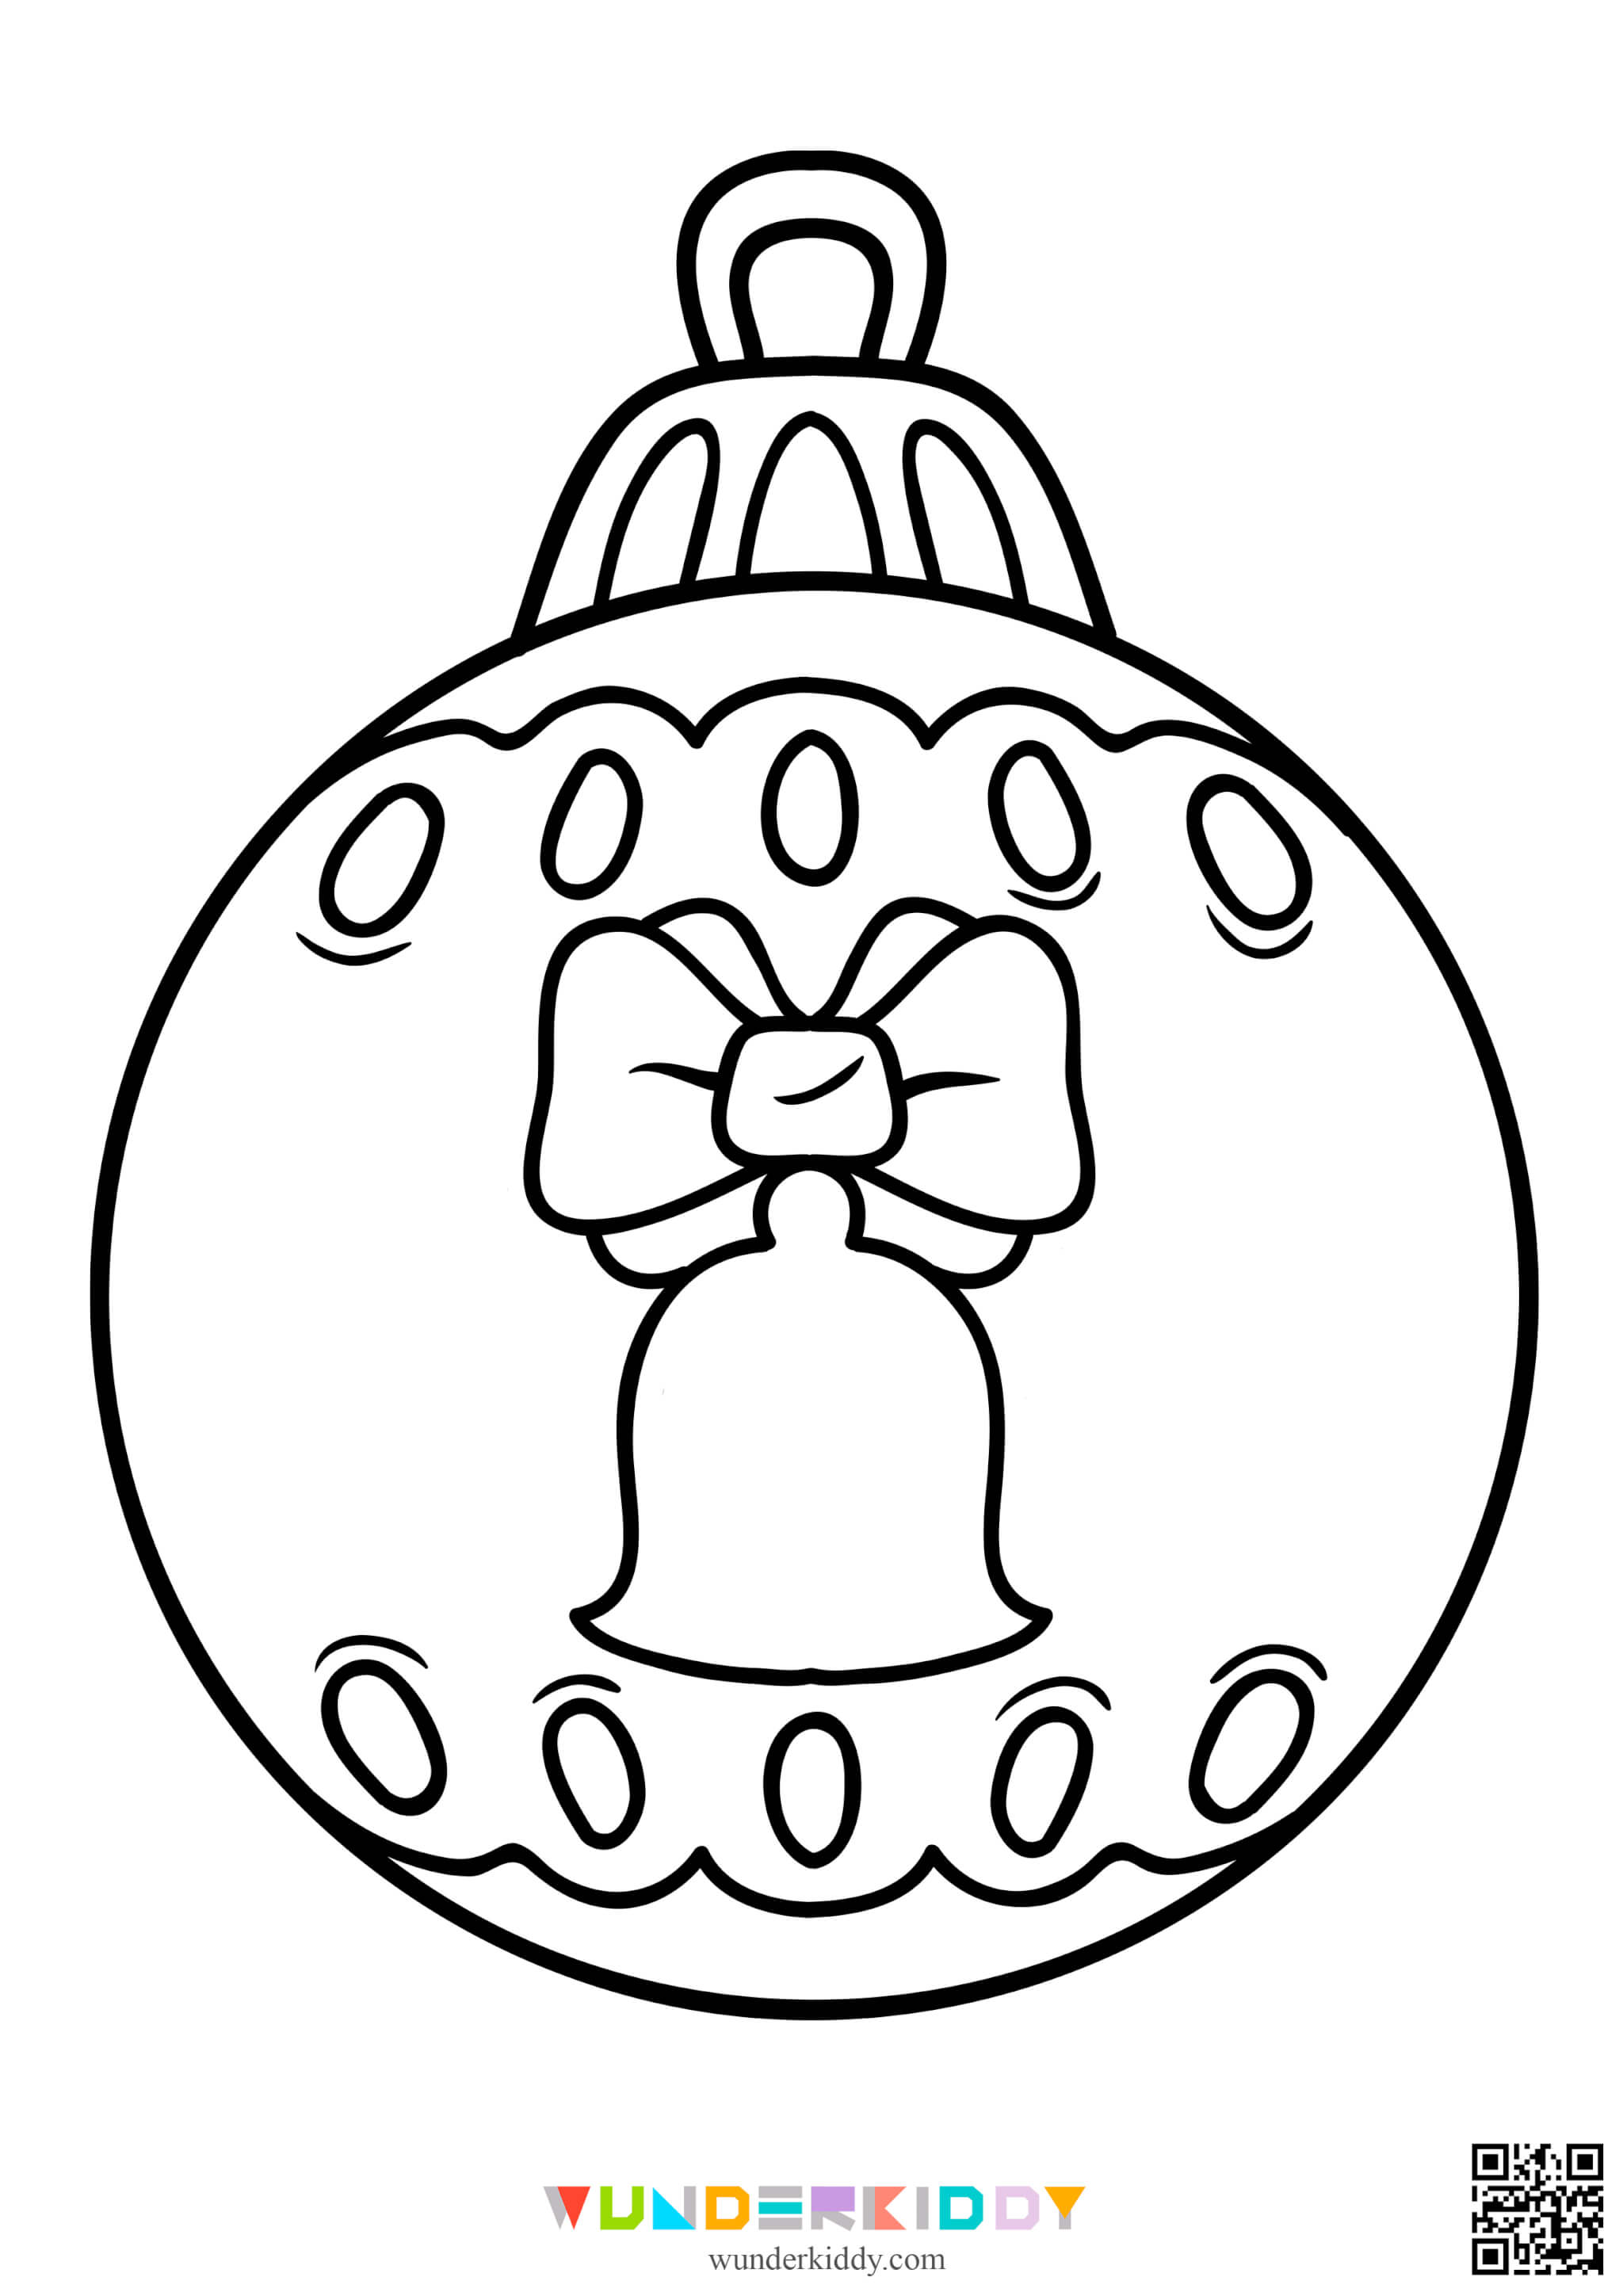 Раскраски ёлочных шаров для детей - Изображение 15